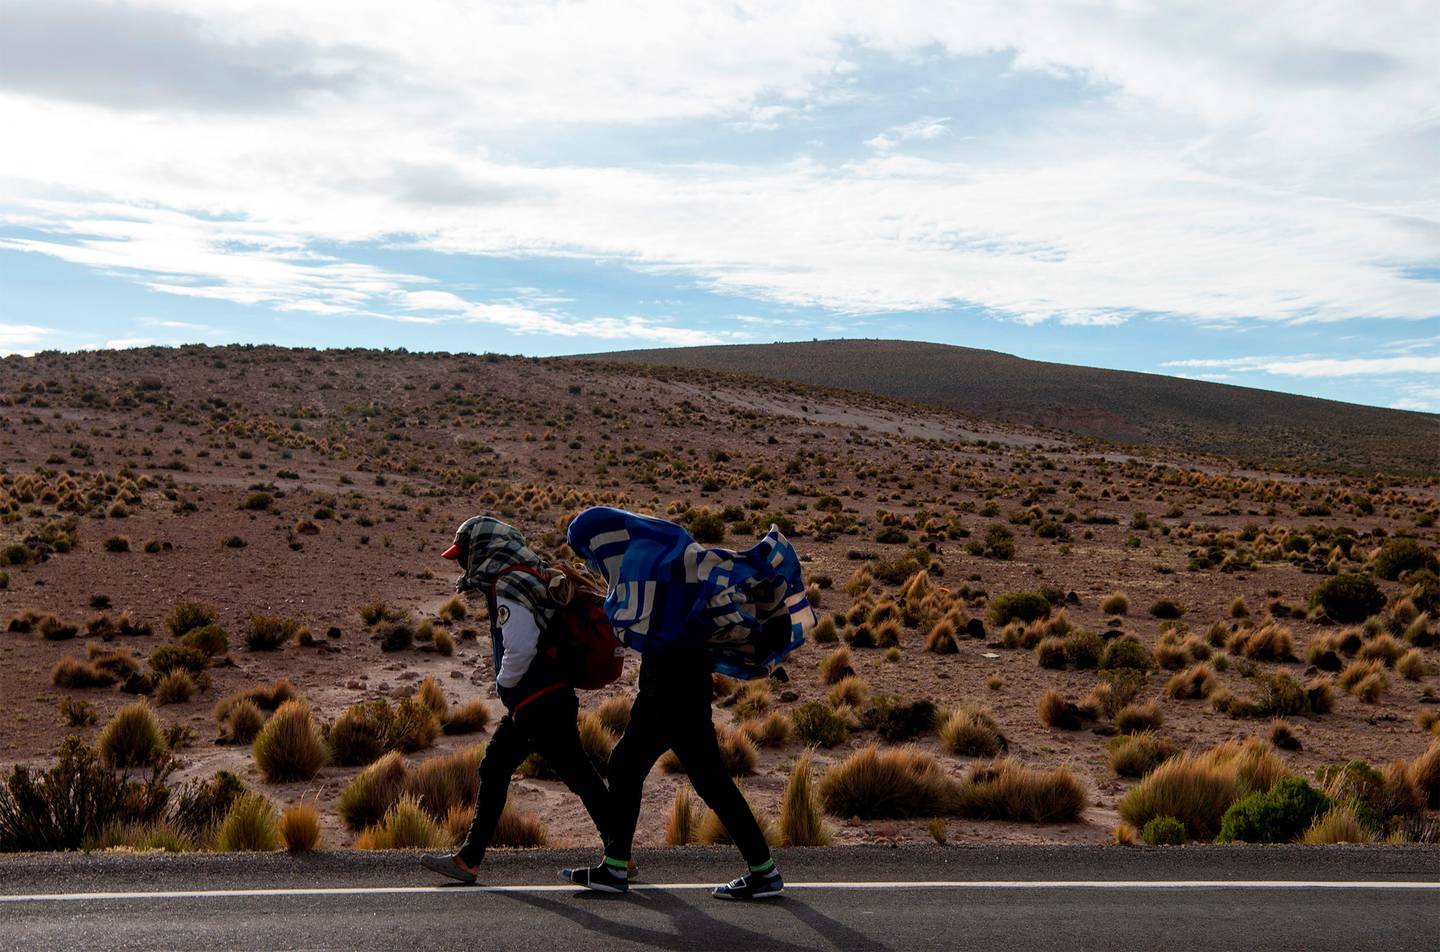 Migrantes venezolanos caminan por la carretera que une Iquique con Colchane, luego de cruzar de Bolivia a Chile, en Quebe, Chile, el 17 de febrero de 2021.Fotógrafo: Martin Bernetti / AFP / Getty Images